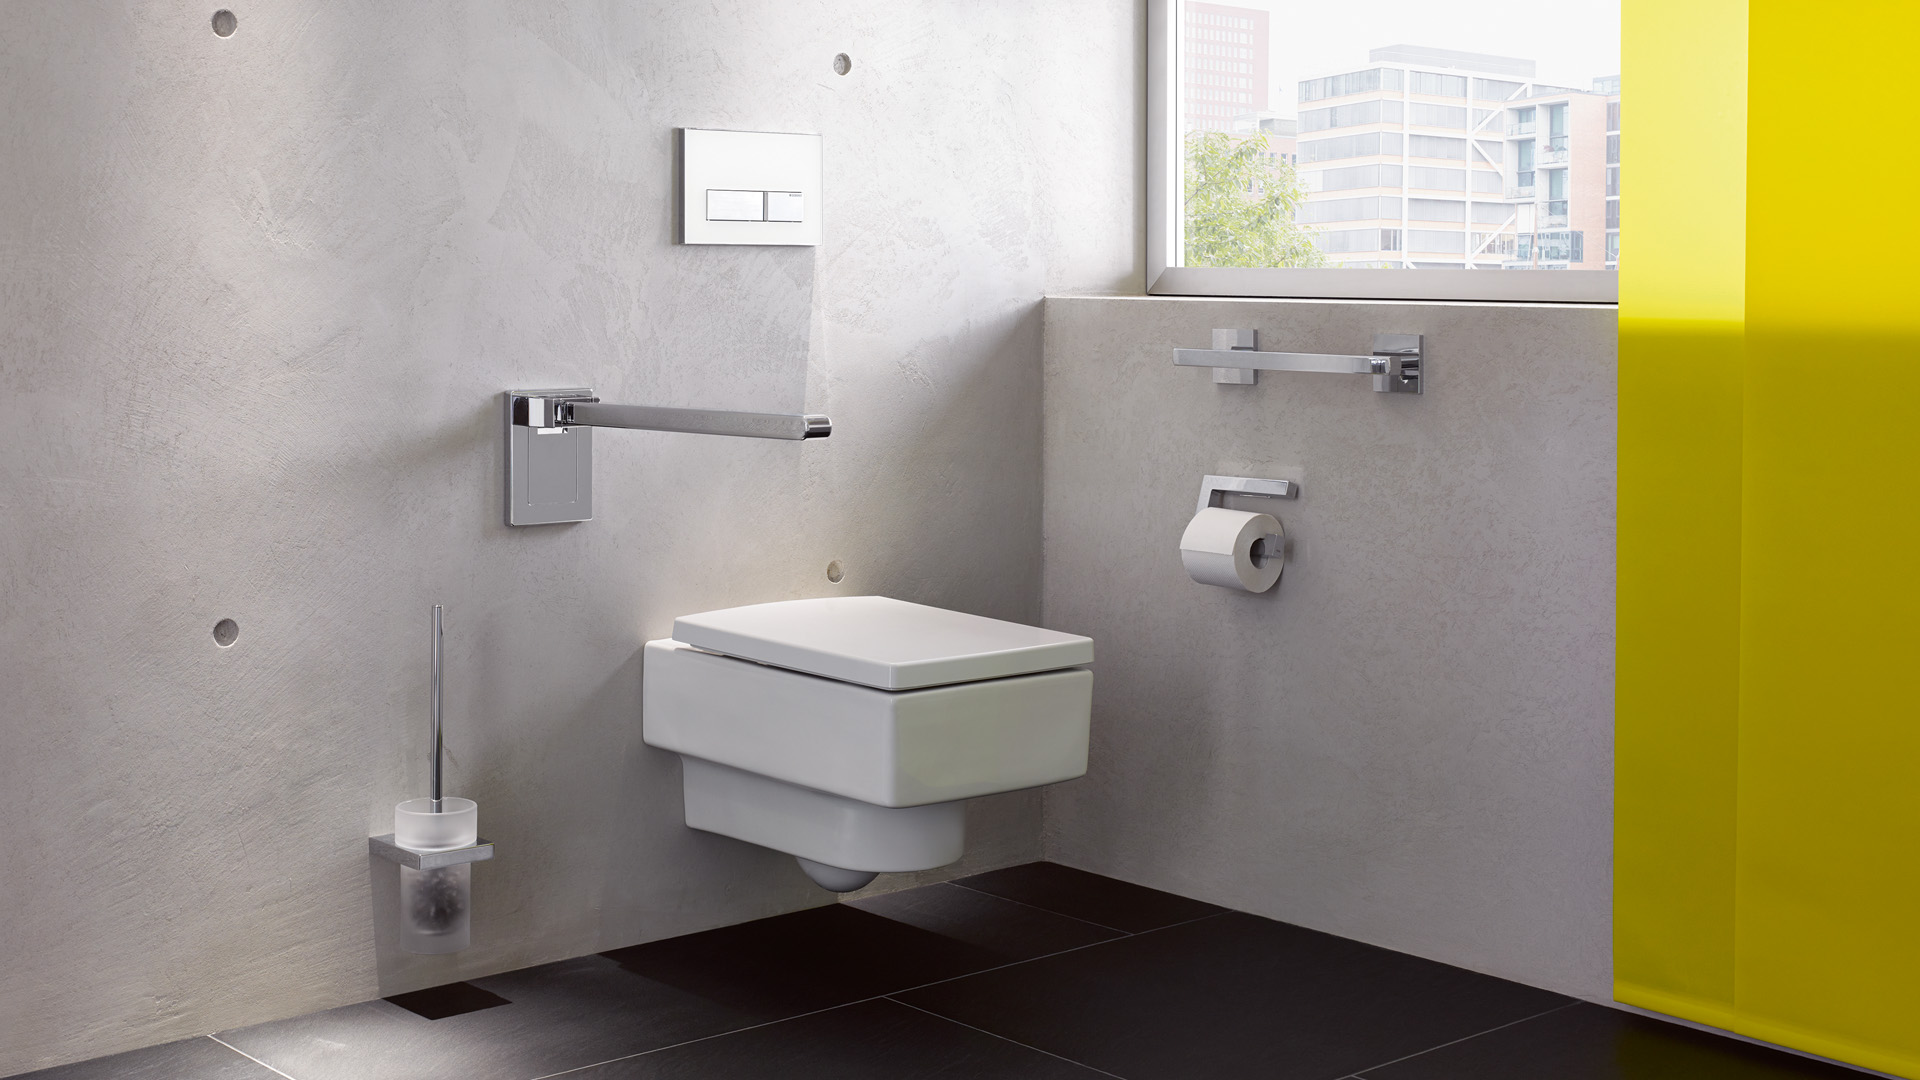 Hewi-Systemlösungen für die Toilette: Stützklappgriff, WC-Bürstengarnitur, Haltegriff, WC-Papierrollenhalter